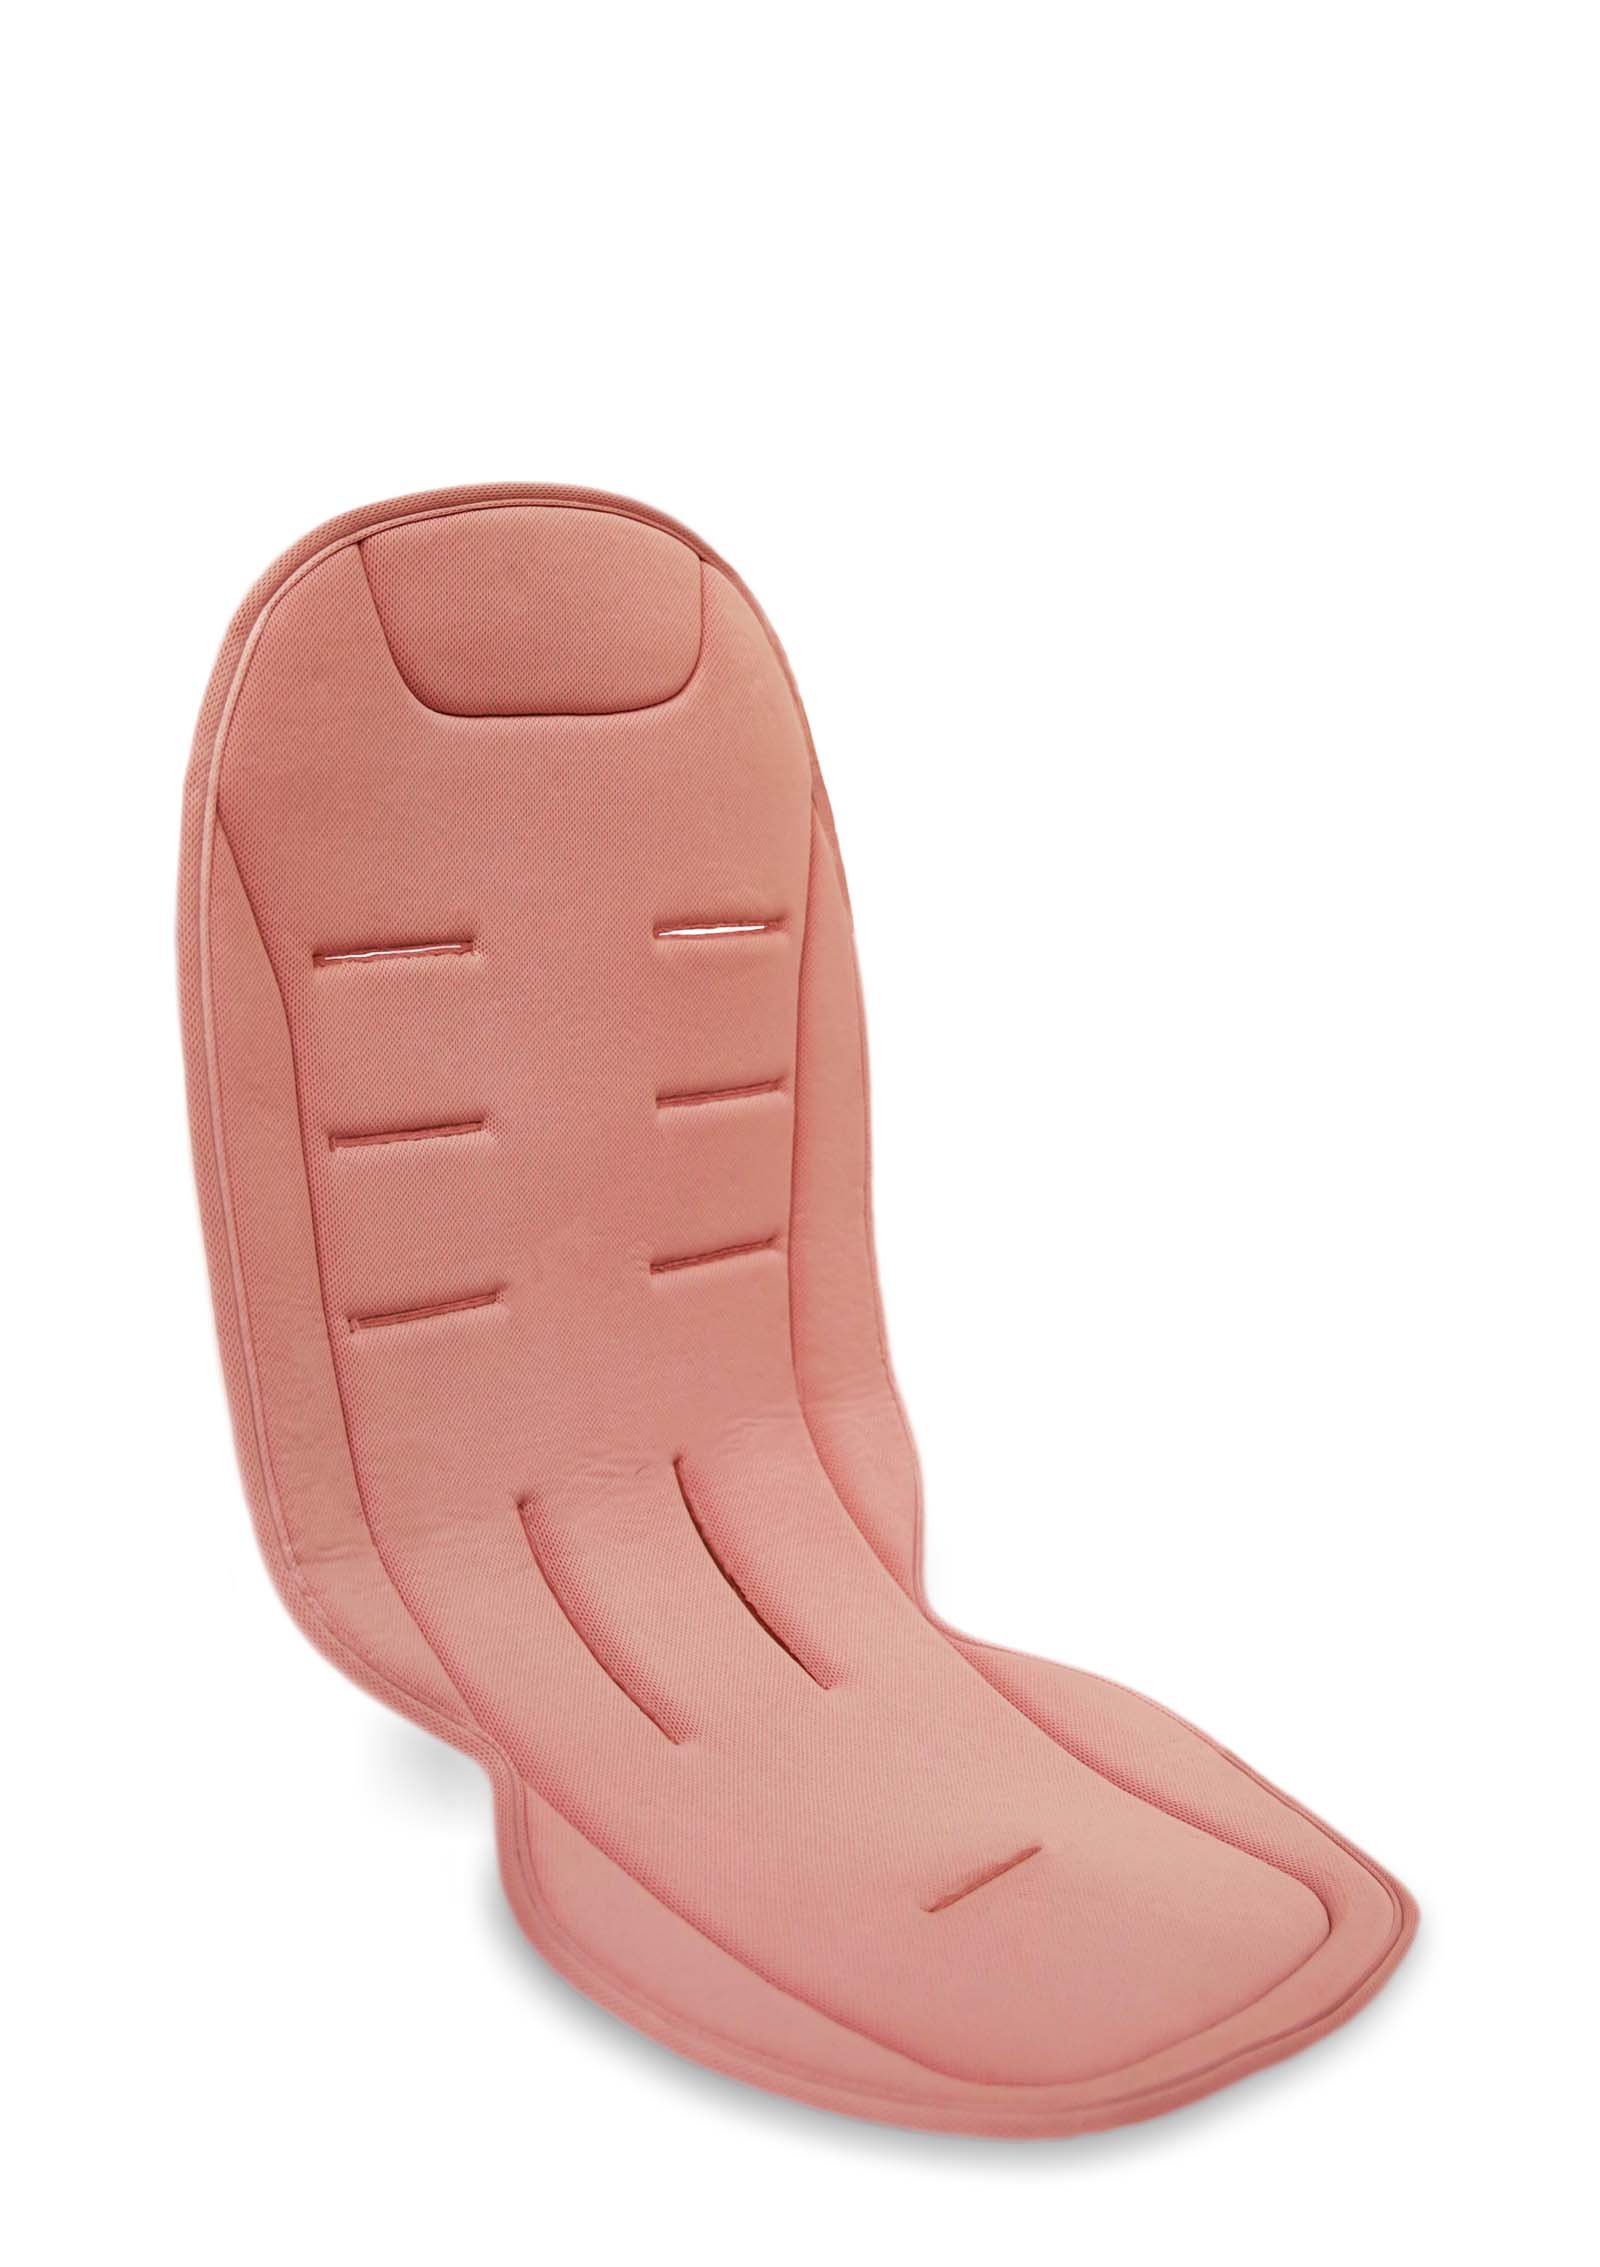 Komfort Sitzauflage Pink